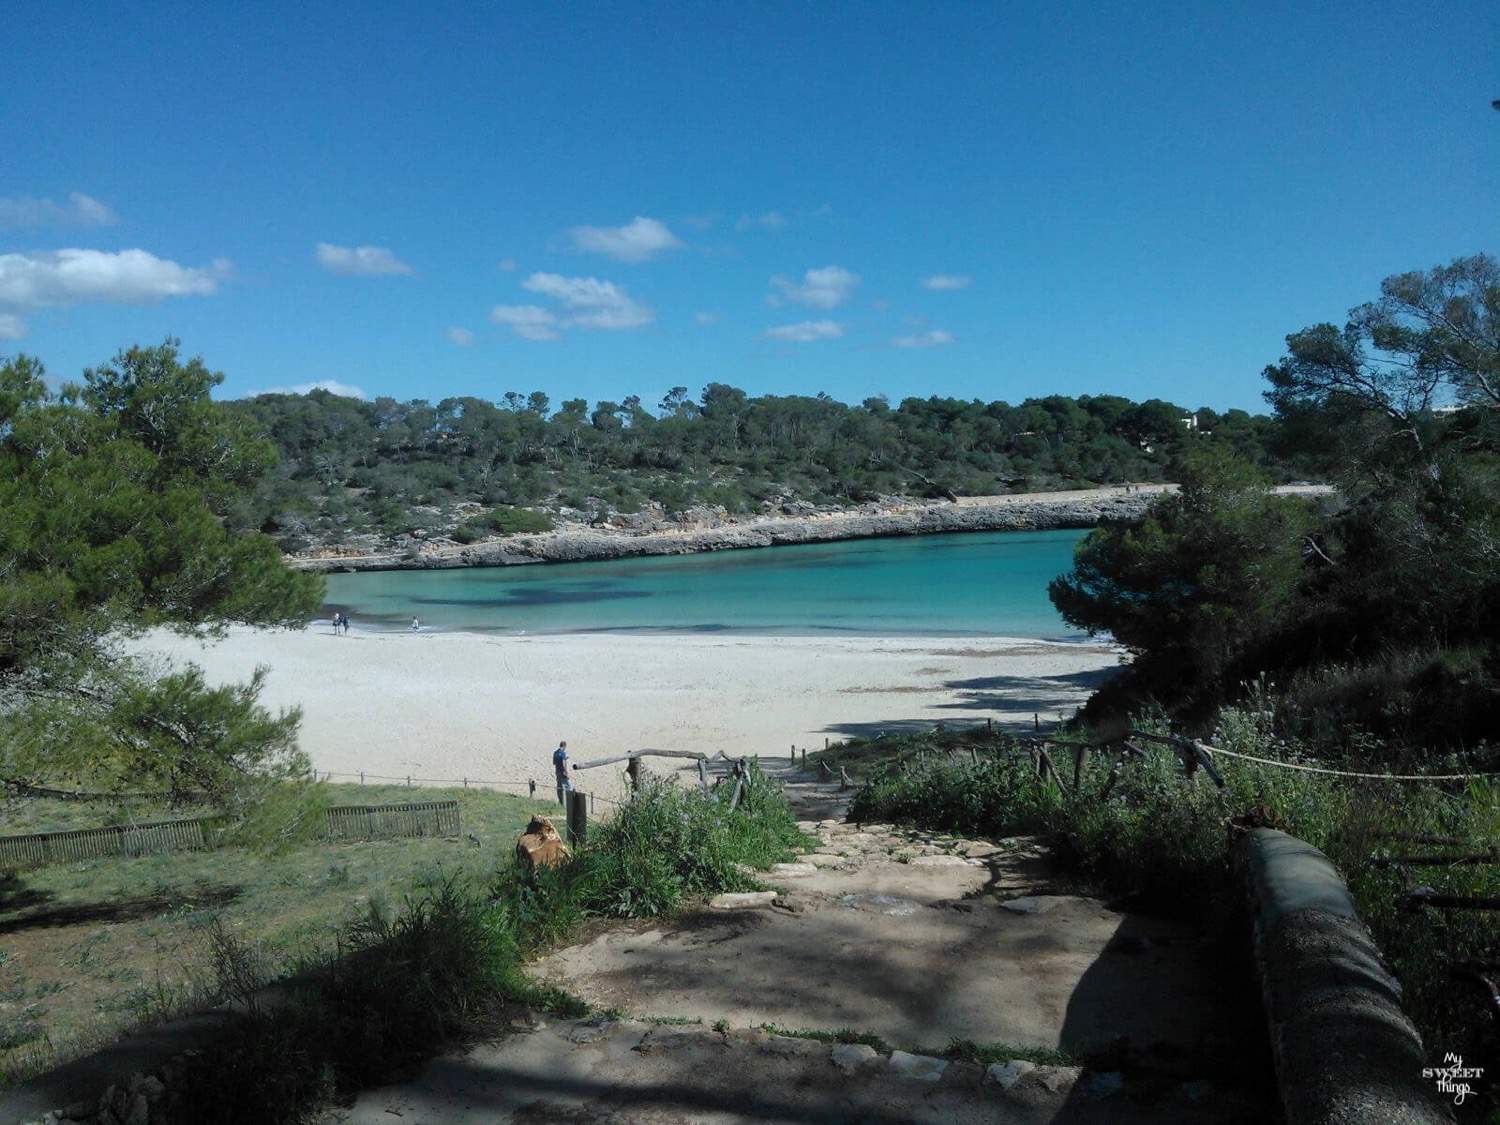 What to do in summer in Mallorca - Cala Mondrago beach